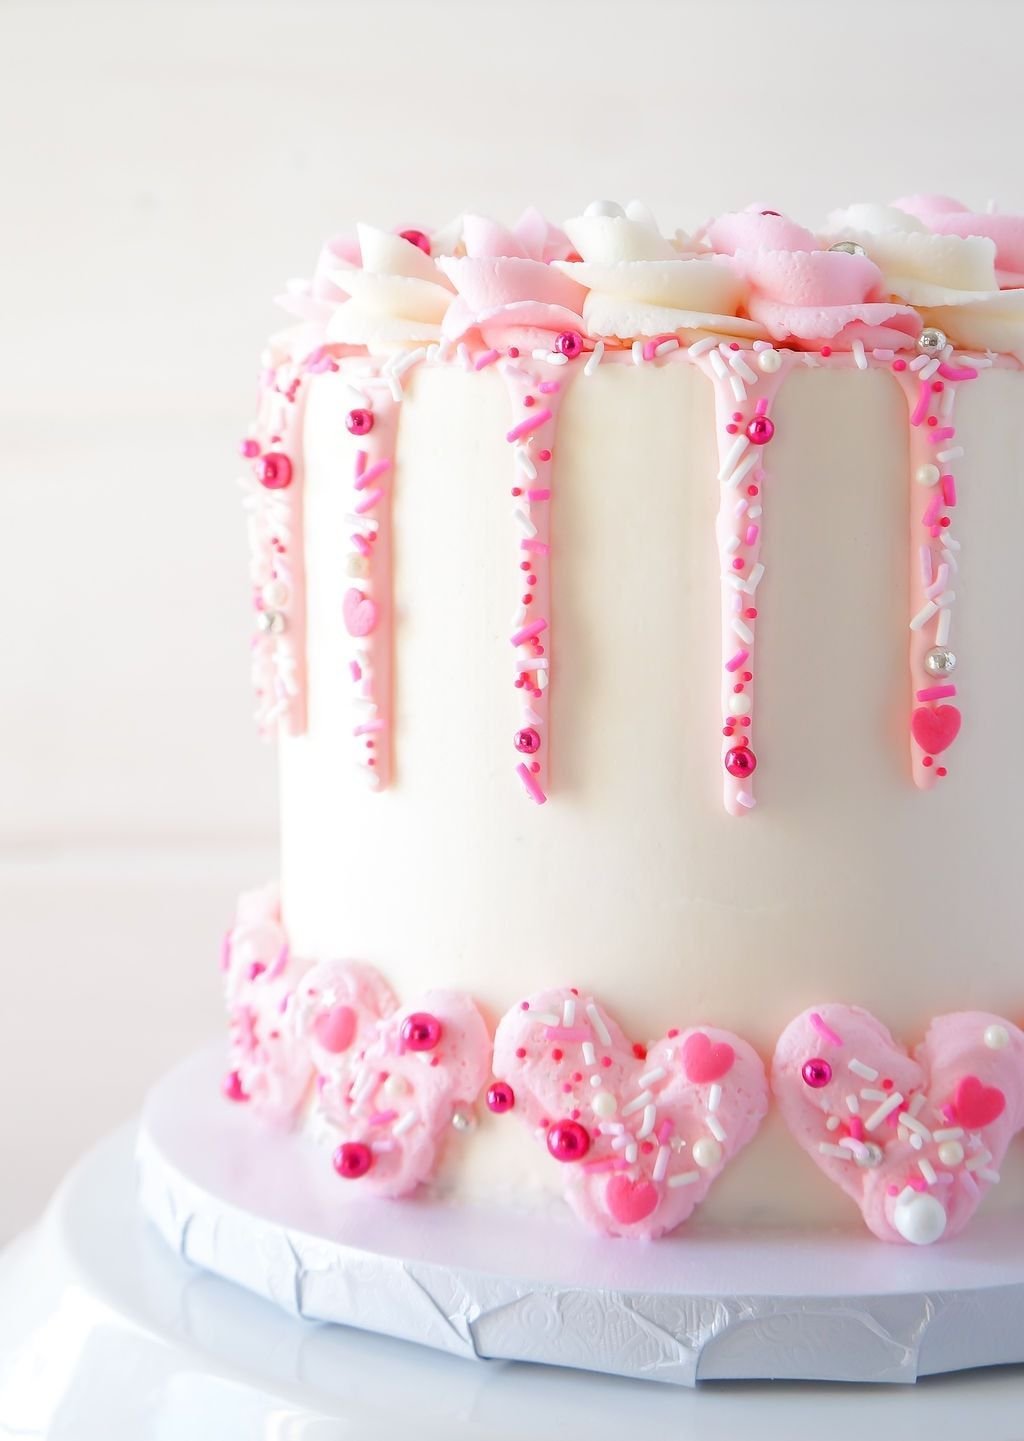 Сделать розовый торт. Торт с розовыми подтеками. Розовый тортик с розовыми подтеками. Розовый торт с белыми подтеками. Белый торт с розовыми подтеками украшения.